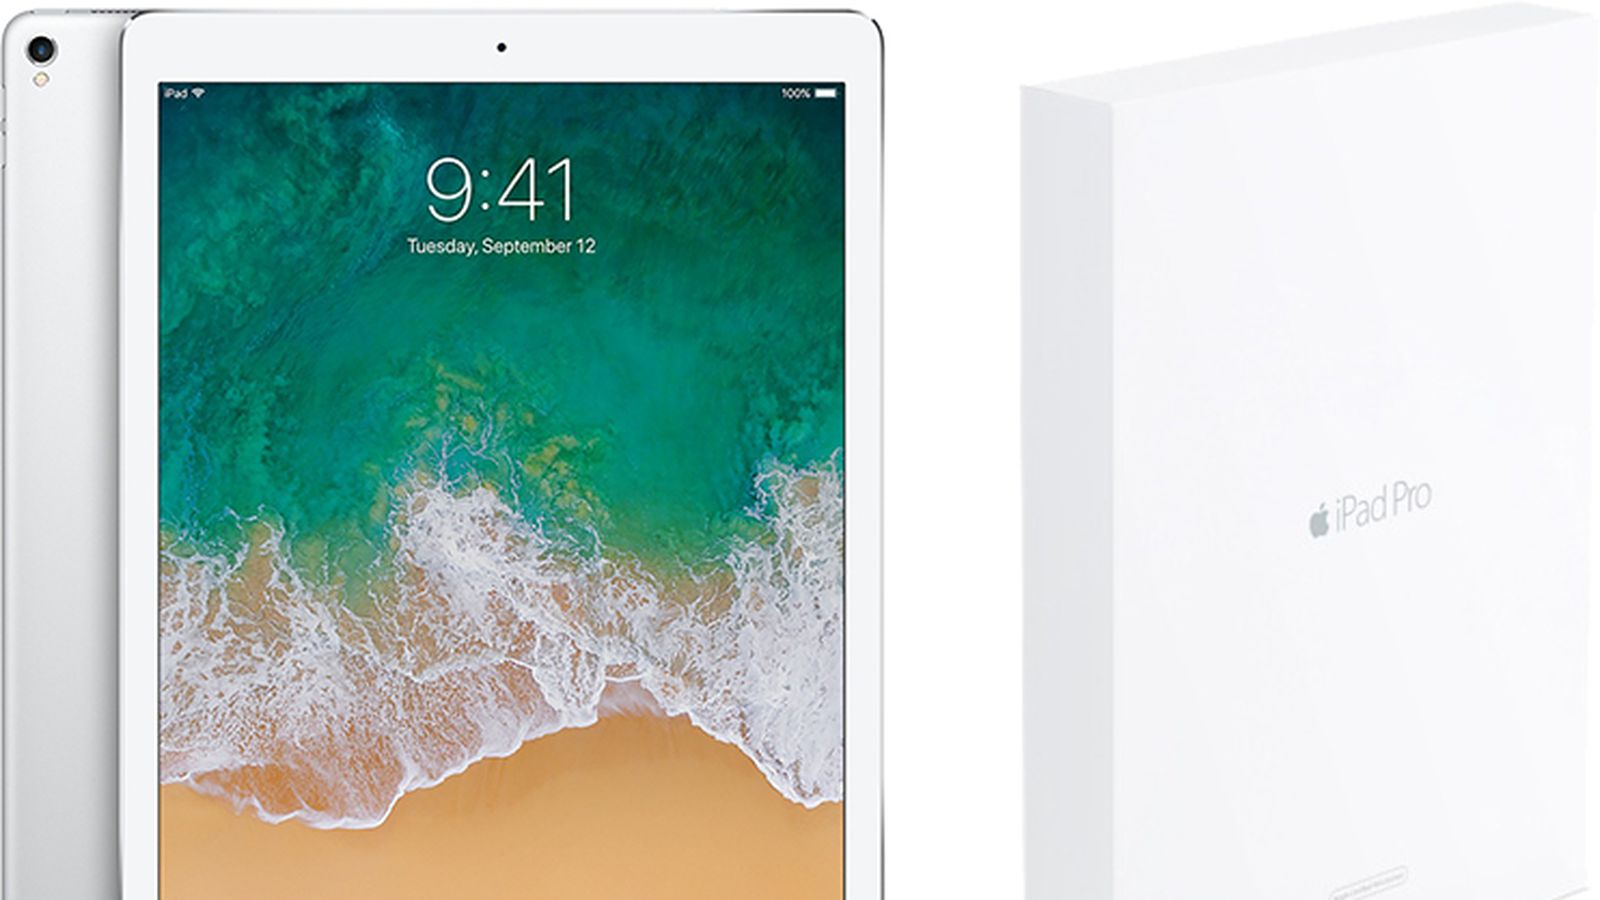 Refurbished iPad Pro 12.9 inch compared